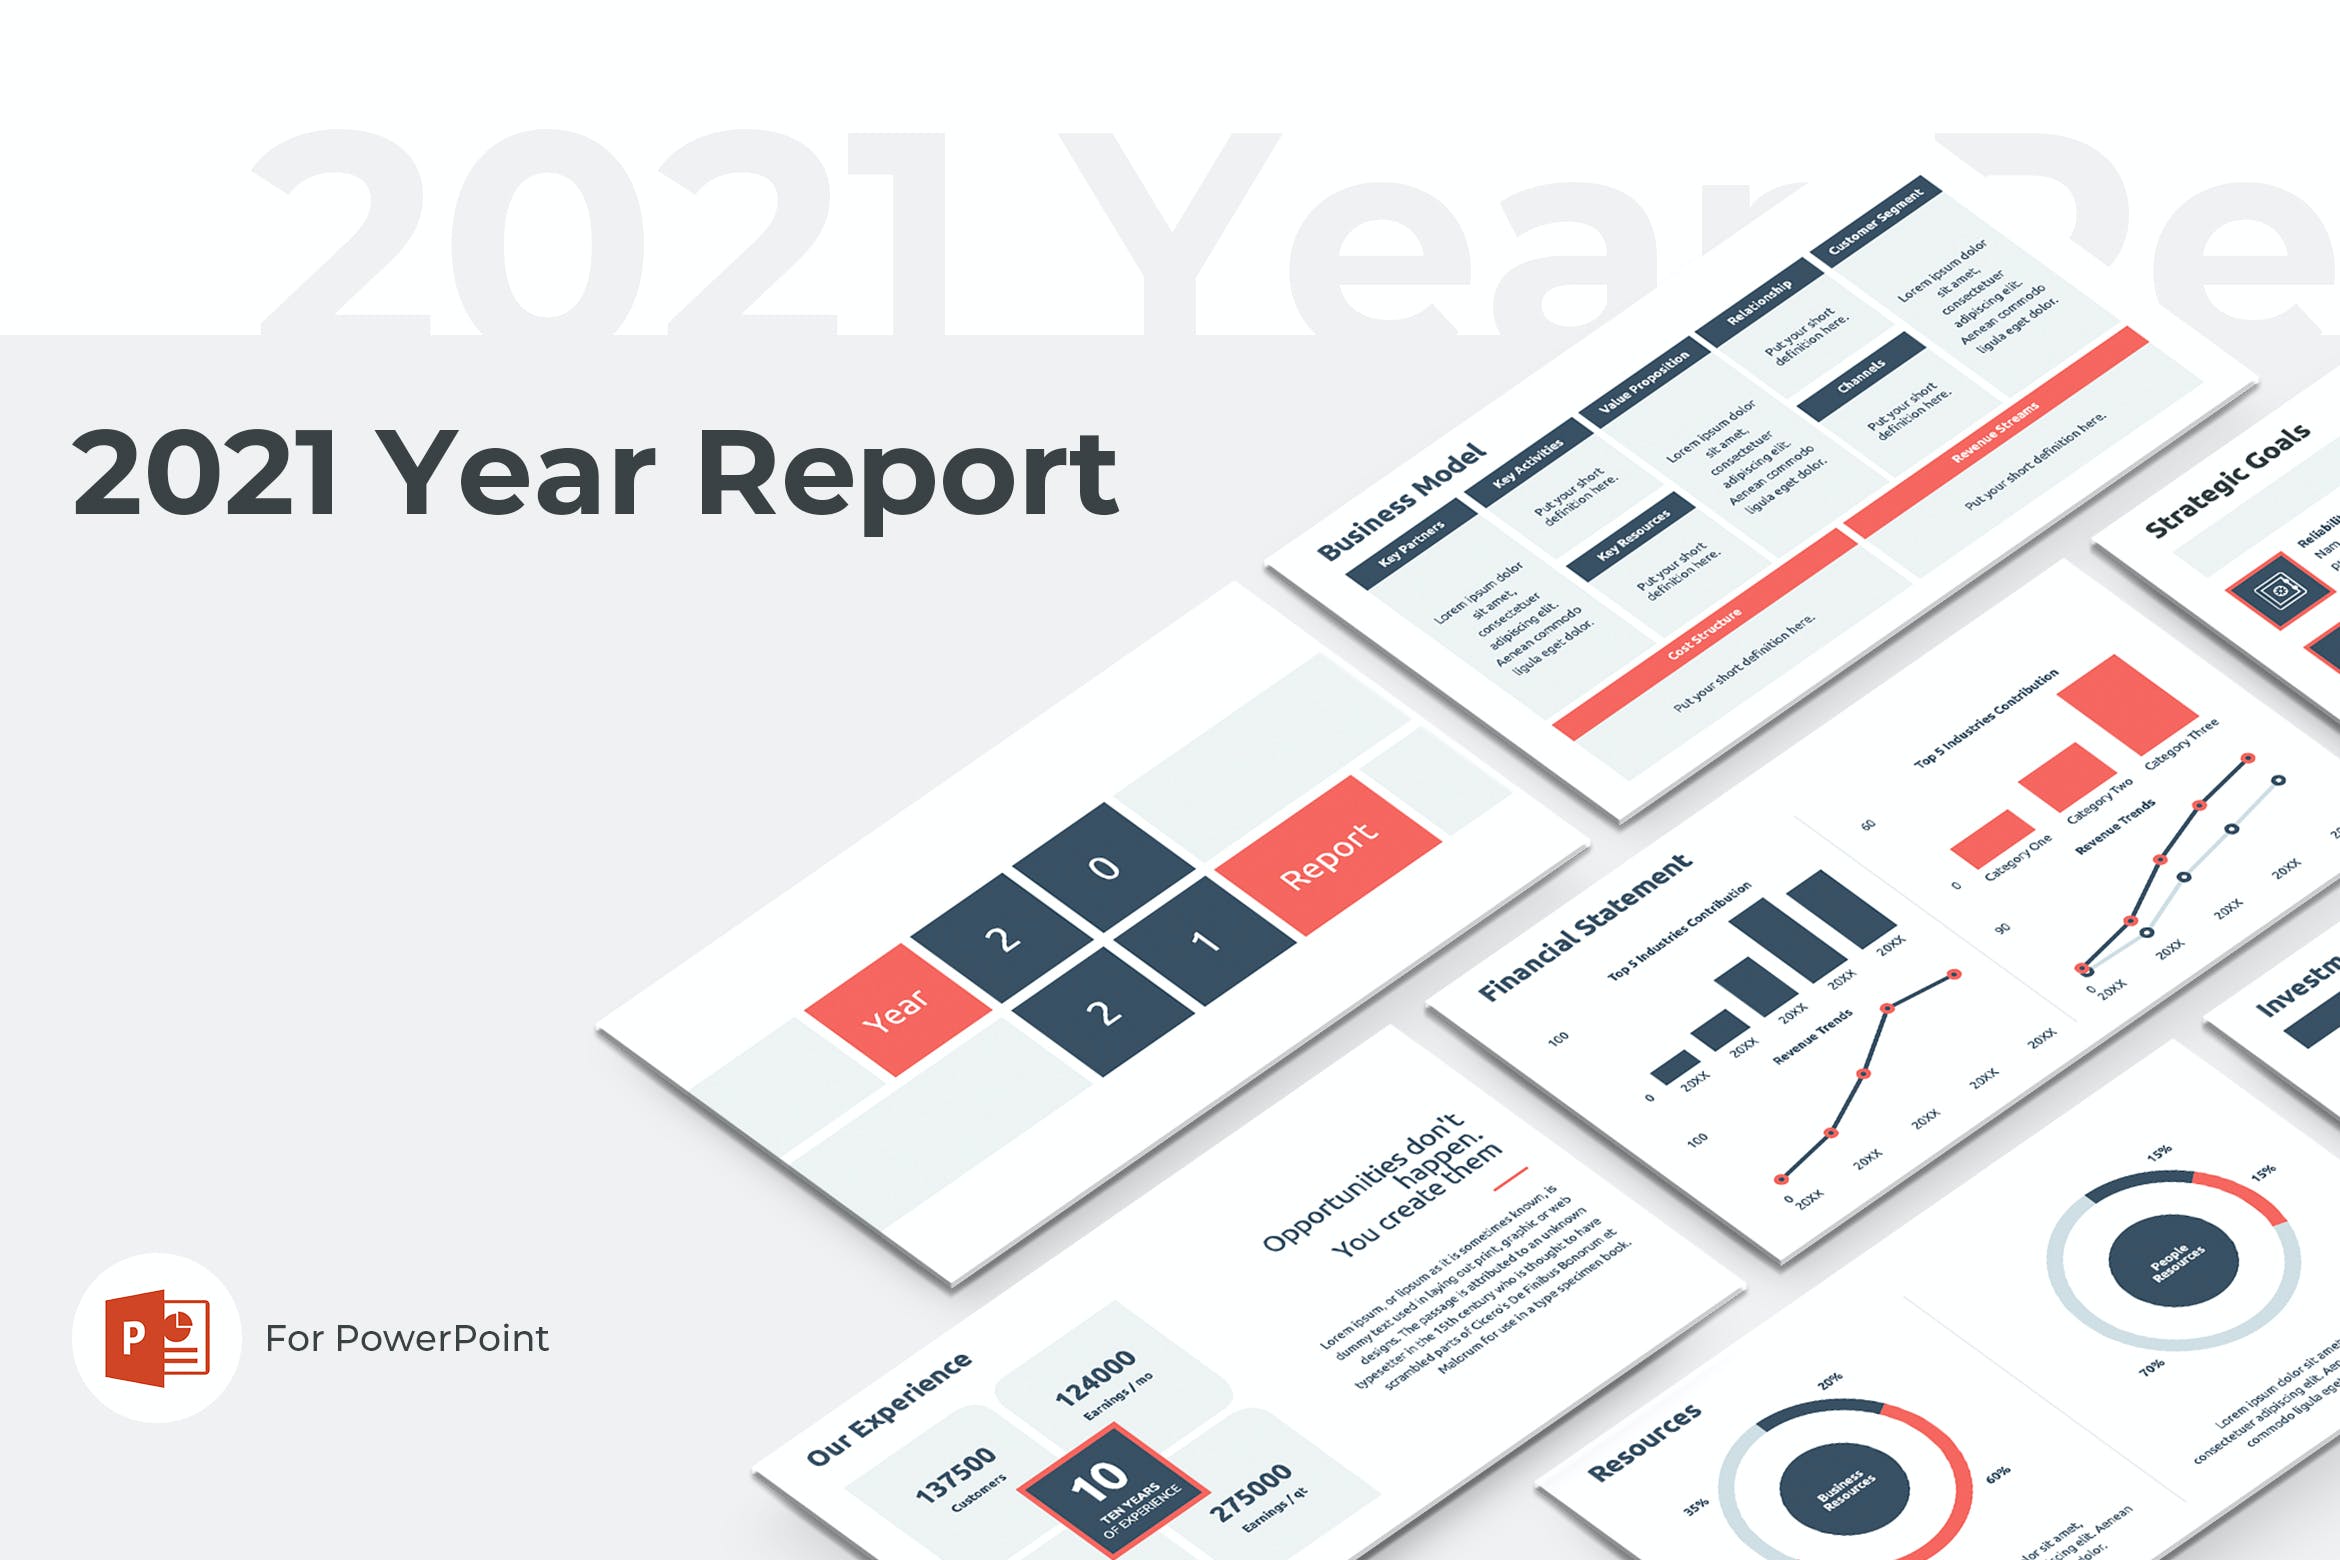 年度综合报告PPT幻灯片模板下载 2021 Year Report PowerPoint 幻灯图表 第1张